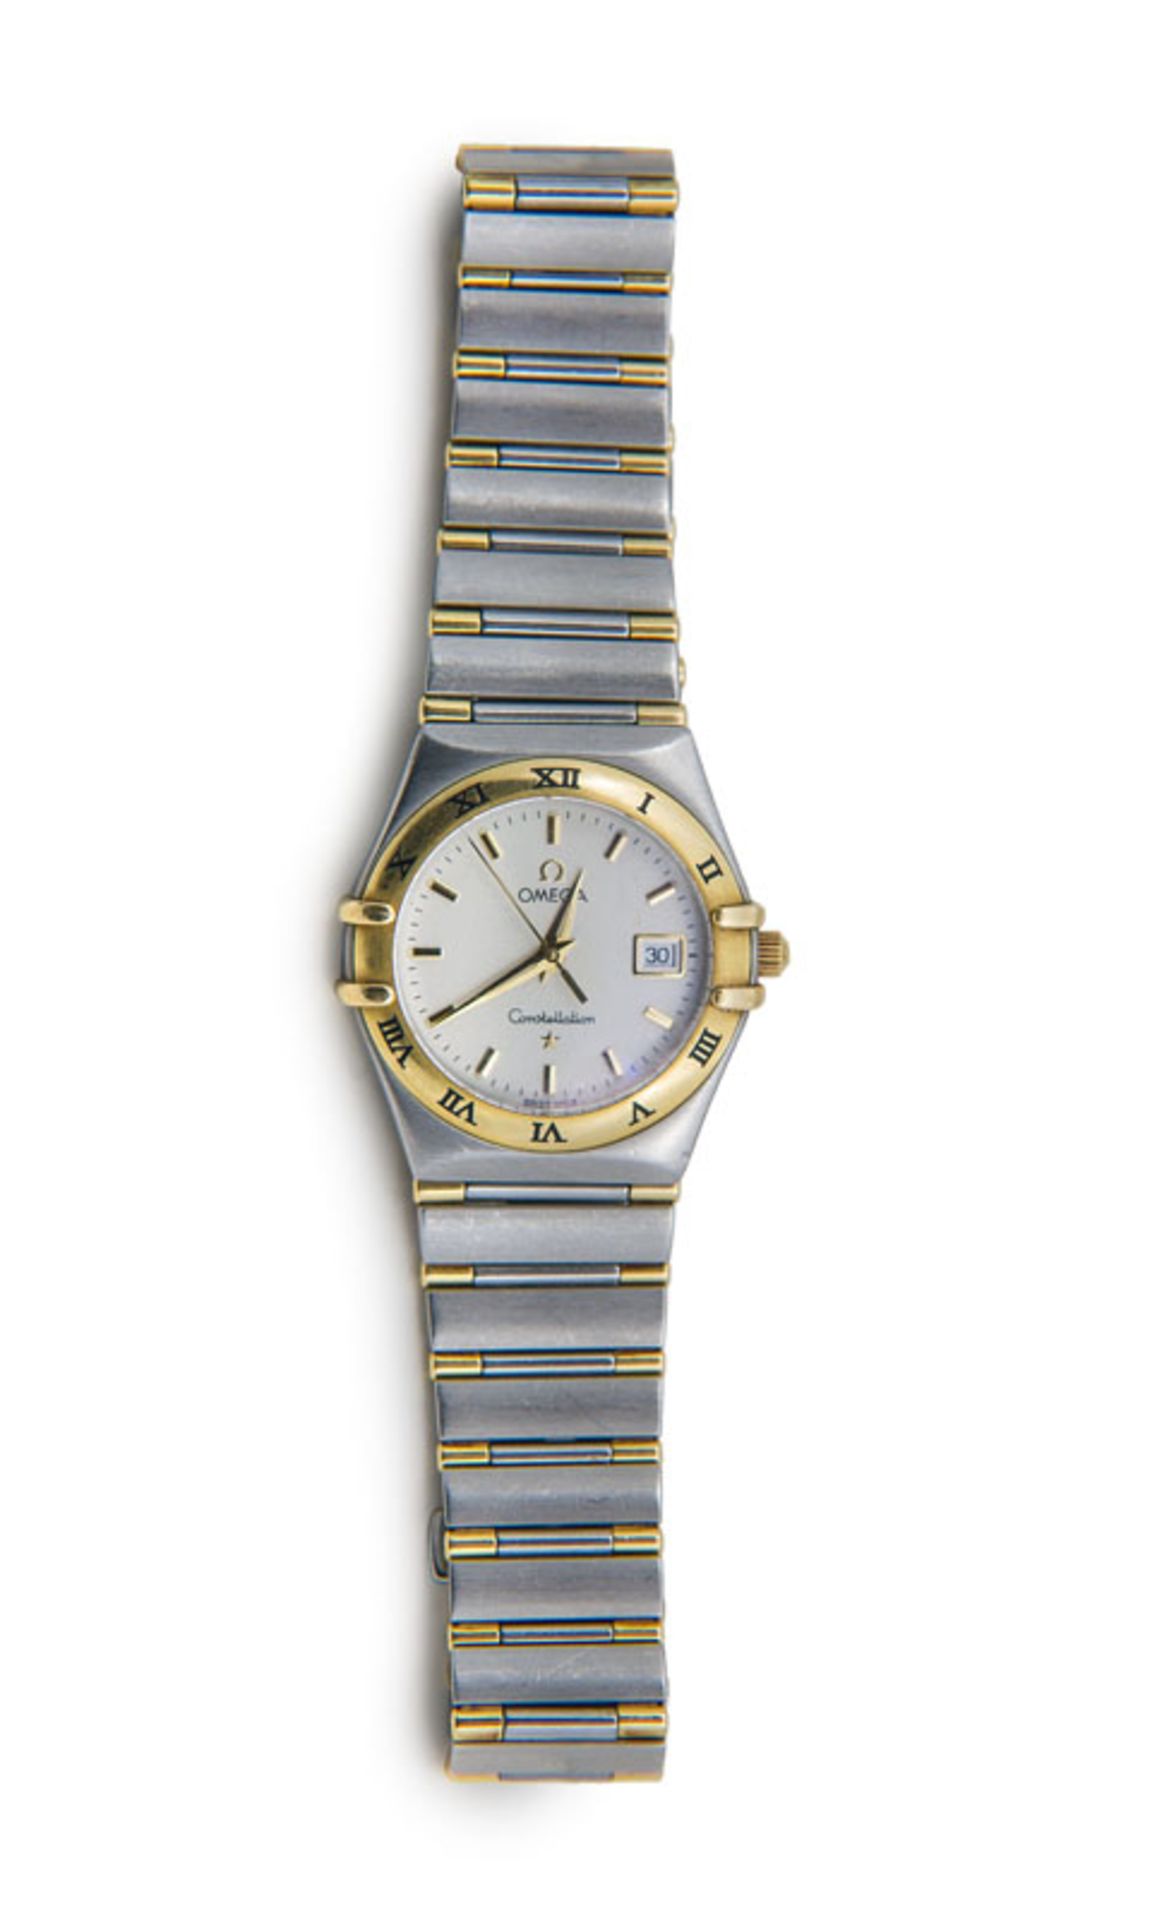 Uhren - - Omega Constellation Damenarmbanduhr. 1980er Jahre. Edelstahl und 18 kt Gelbgold. Rundes